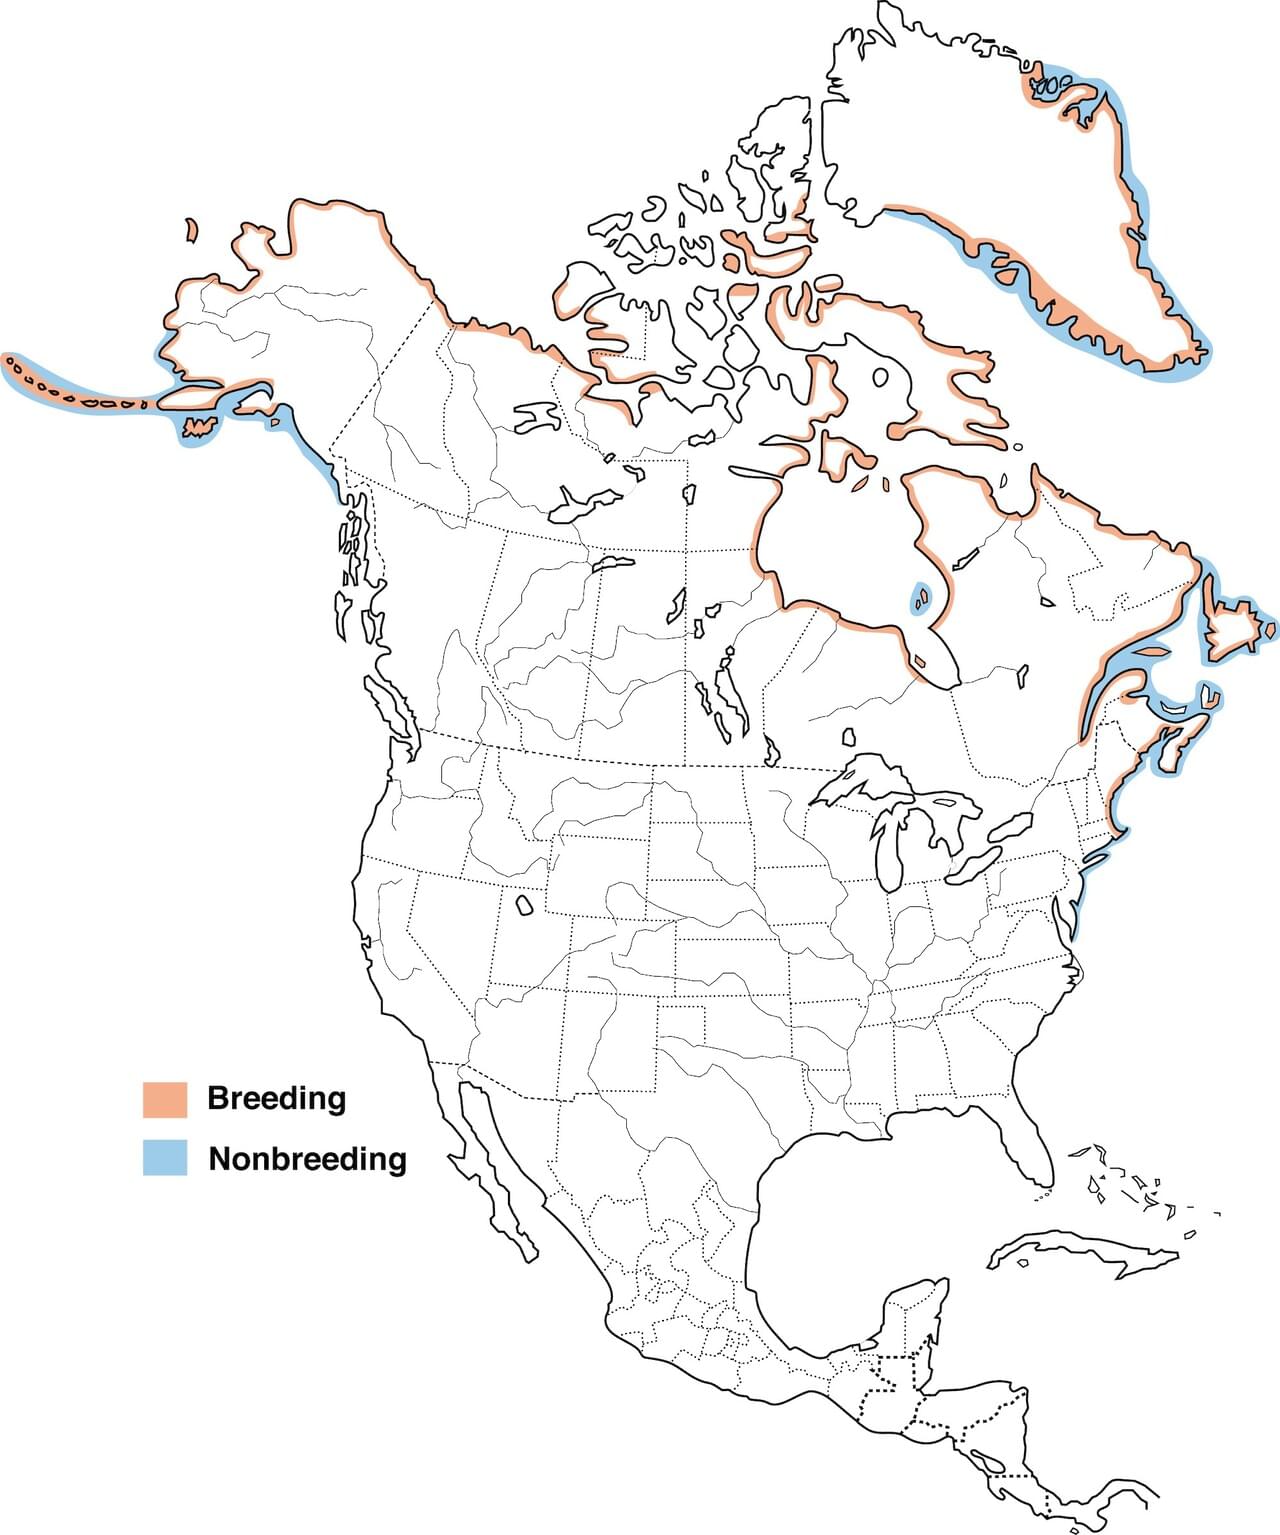 Range Map for Common Eider